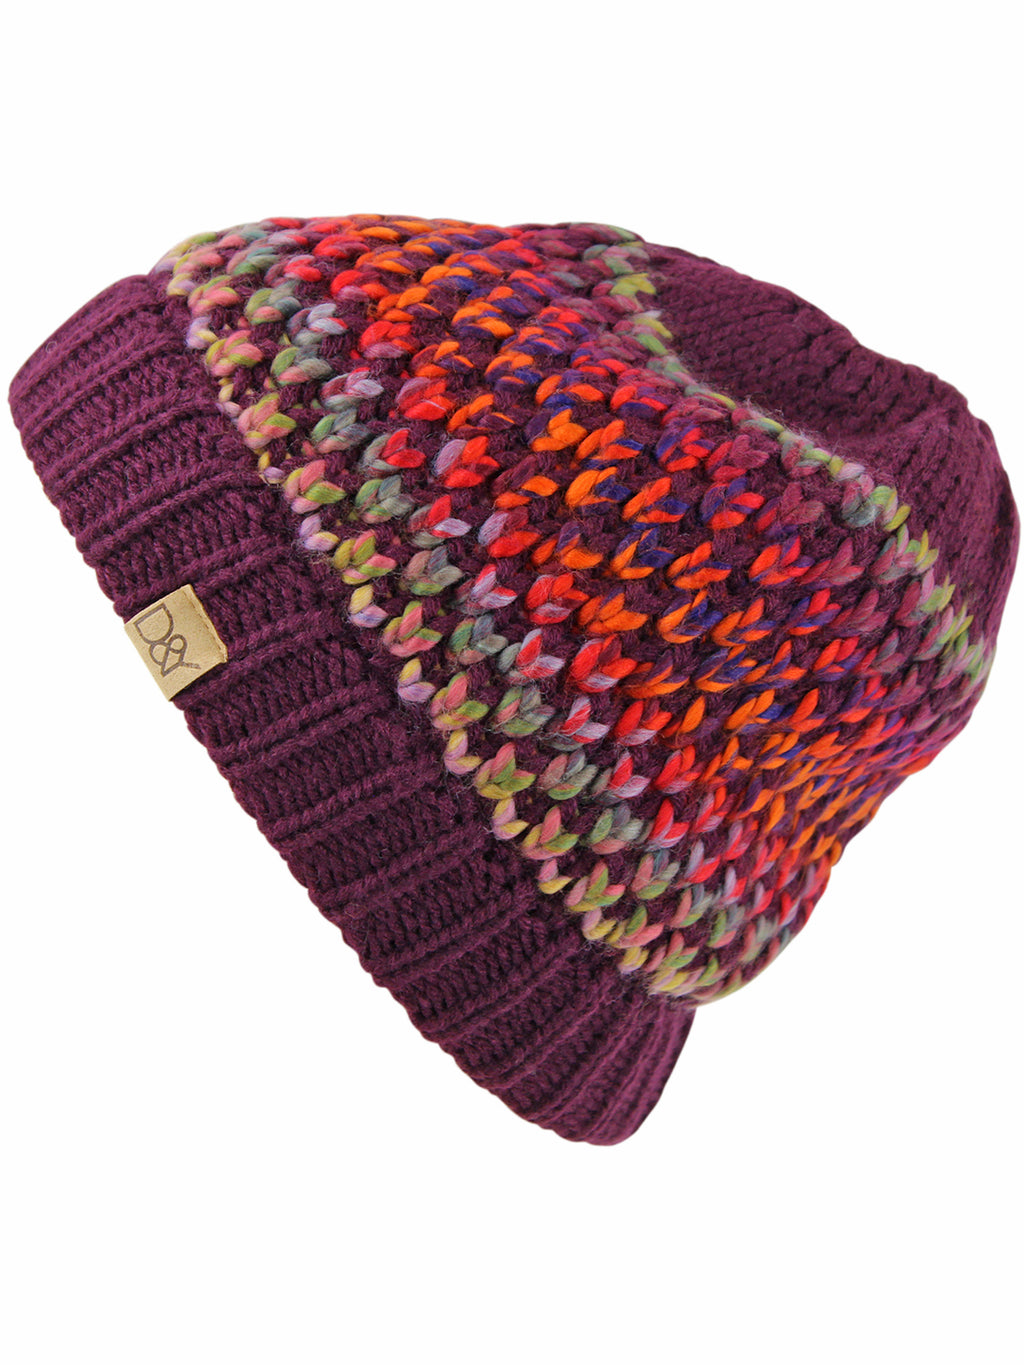 Plum Multicolor Knit Messy Bun Ponytail Hat